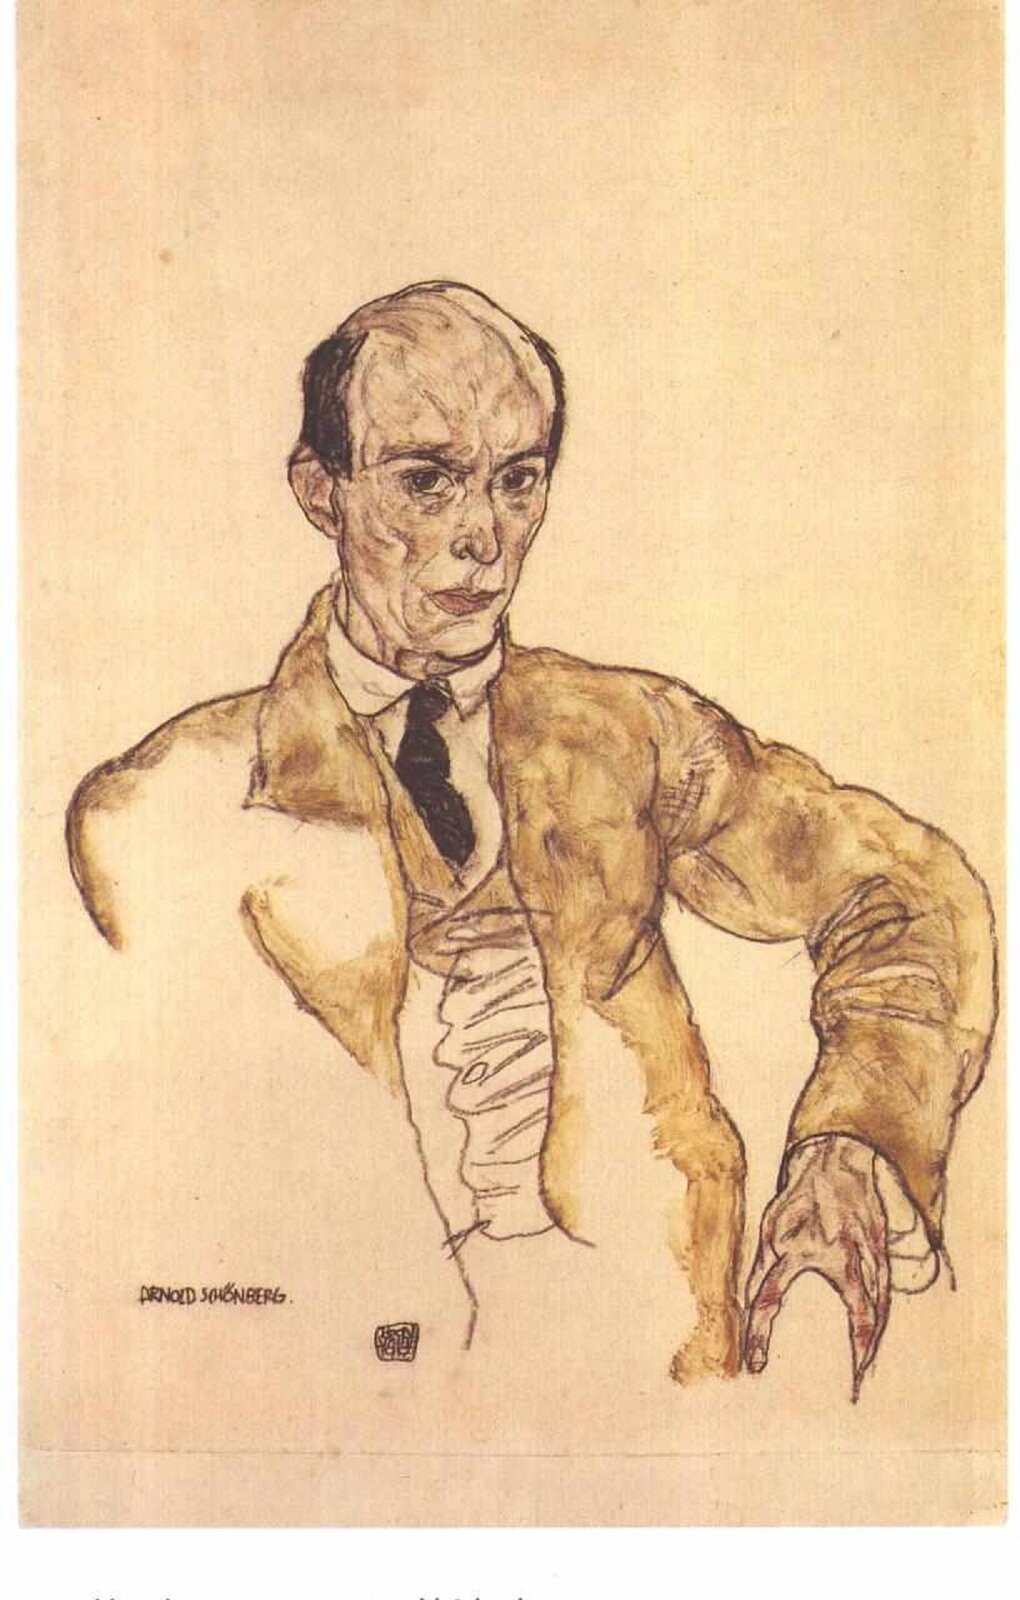 Ilustracja przedstawia portret Schönberga w lekko karykaturalnym wydaniu. Mężczyzna lekko łysiejący, ubrany elegancko w jasny garnitur i białą koszulę.